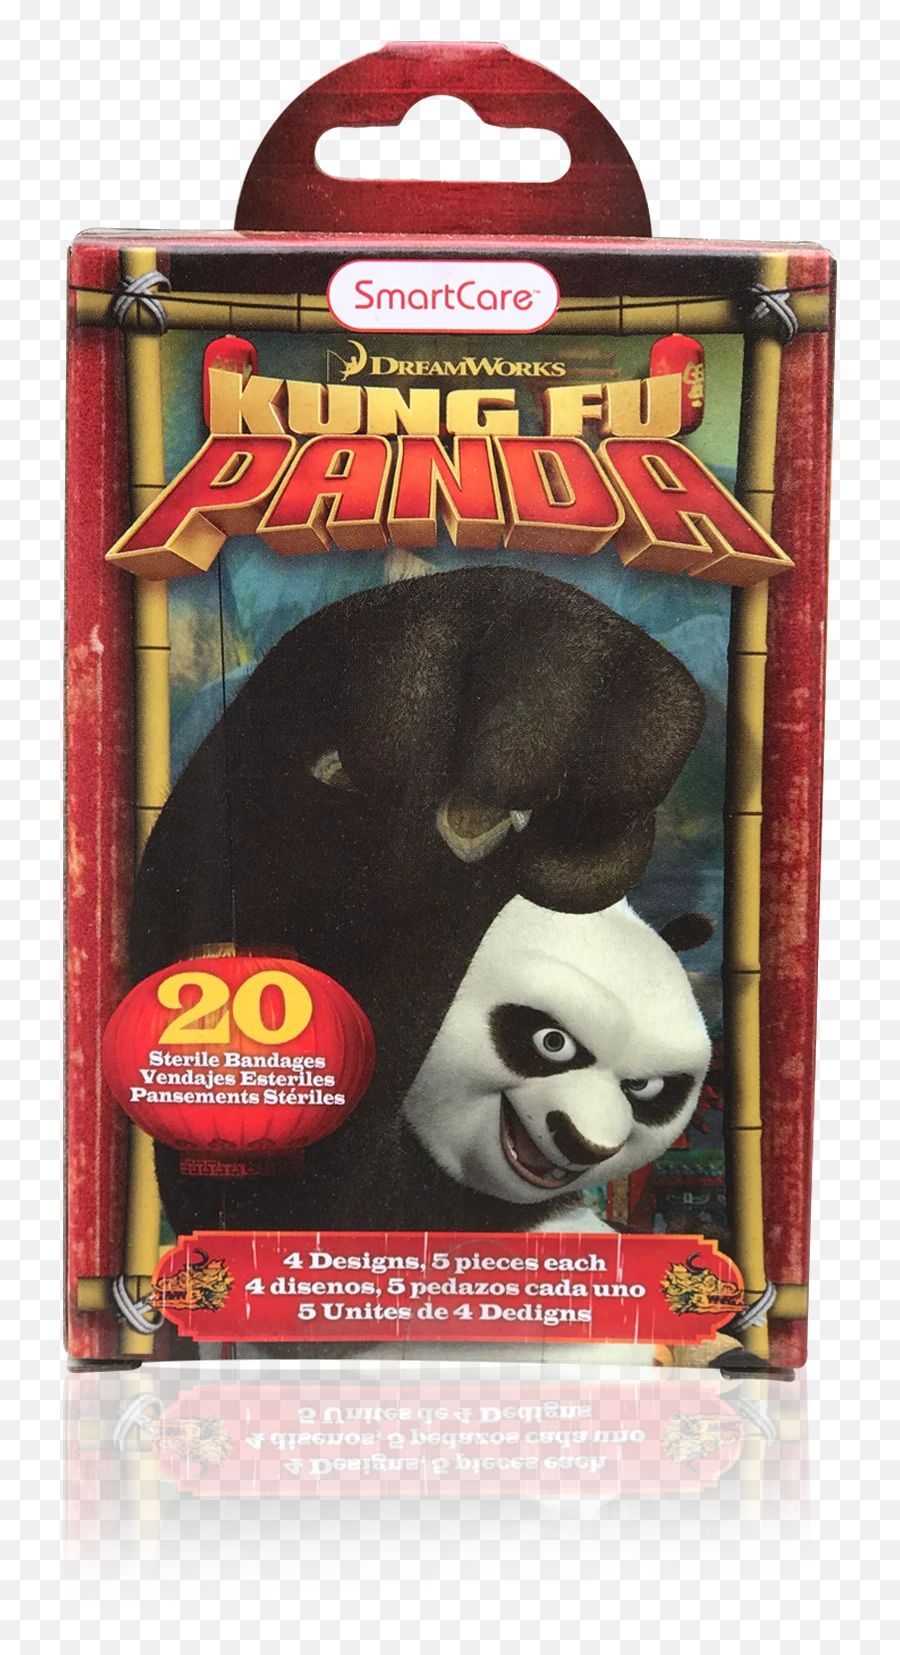 Smart Care Kung Fu Panda Bandages U2013 Brush Buddies - Kung Fu Panda Band Aids Emoji,Badger Emoji